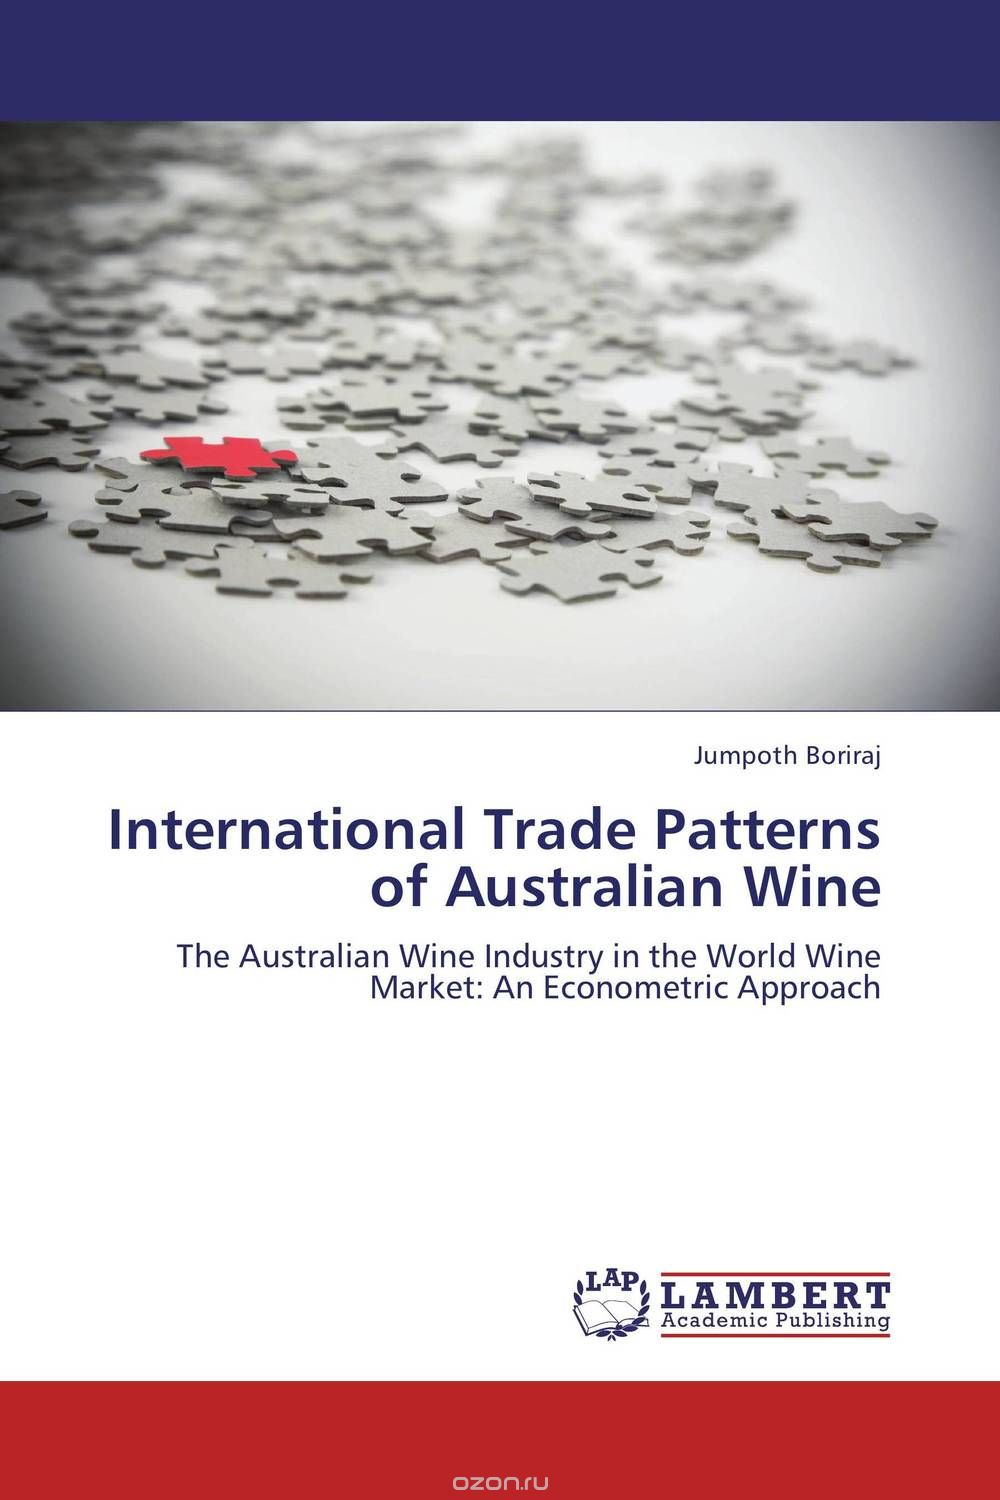 Скачать книгу "International Trade Patterns of Australian Wine"